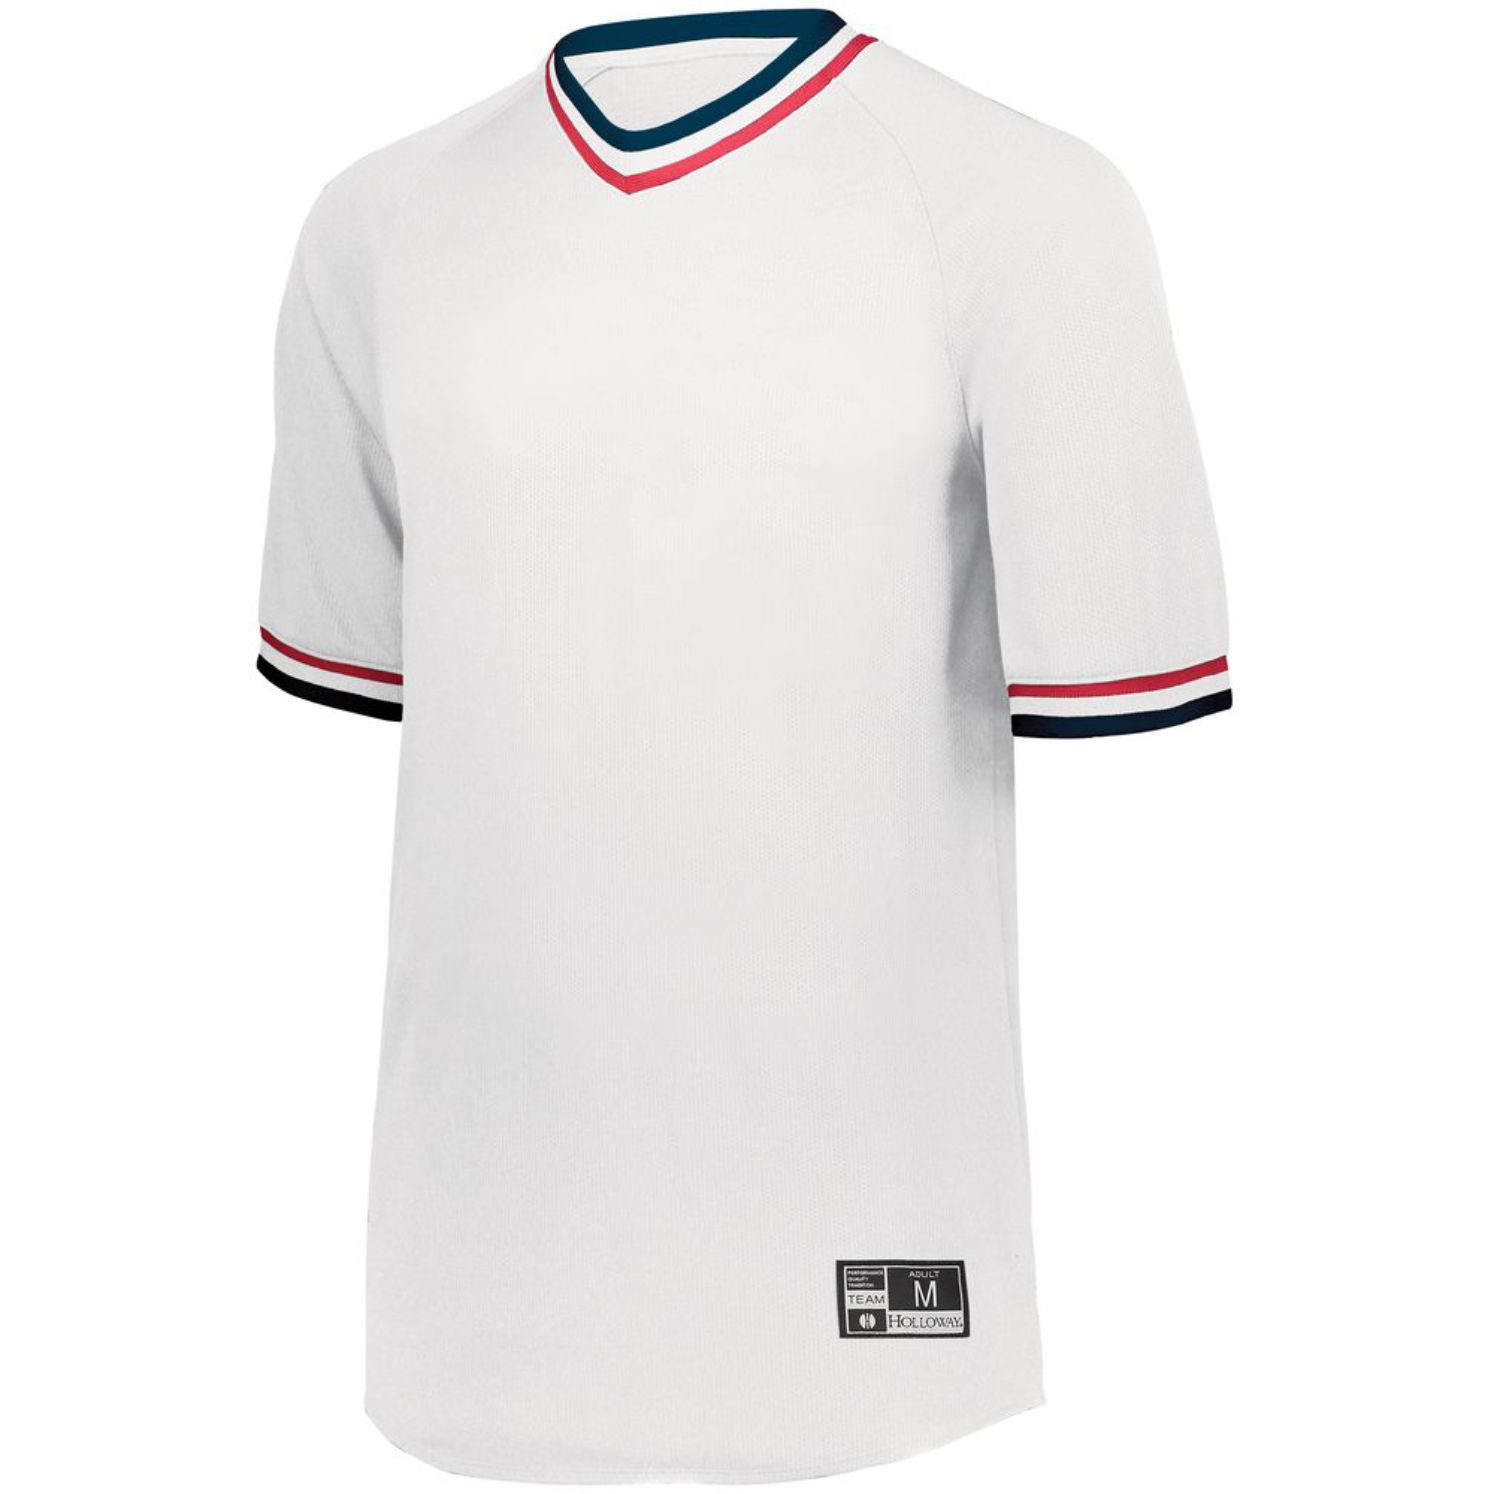 Holloway Retro V-Neck Baseball Jersey #221021 White / Navy / Scarlet